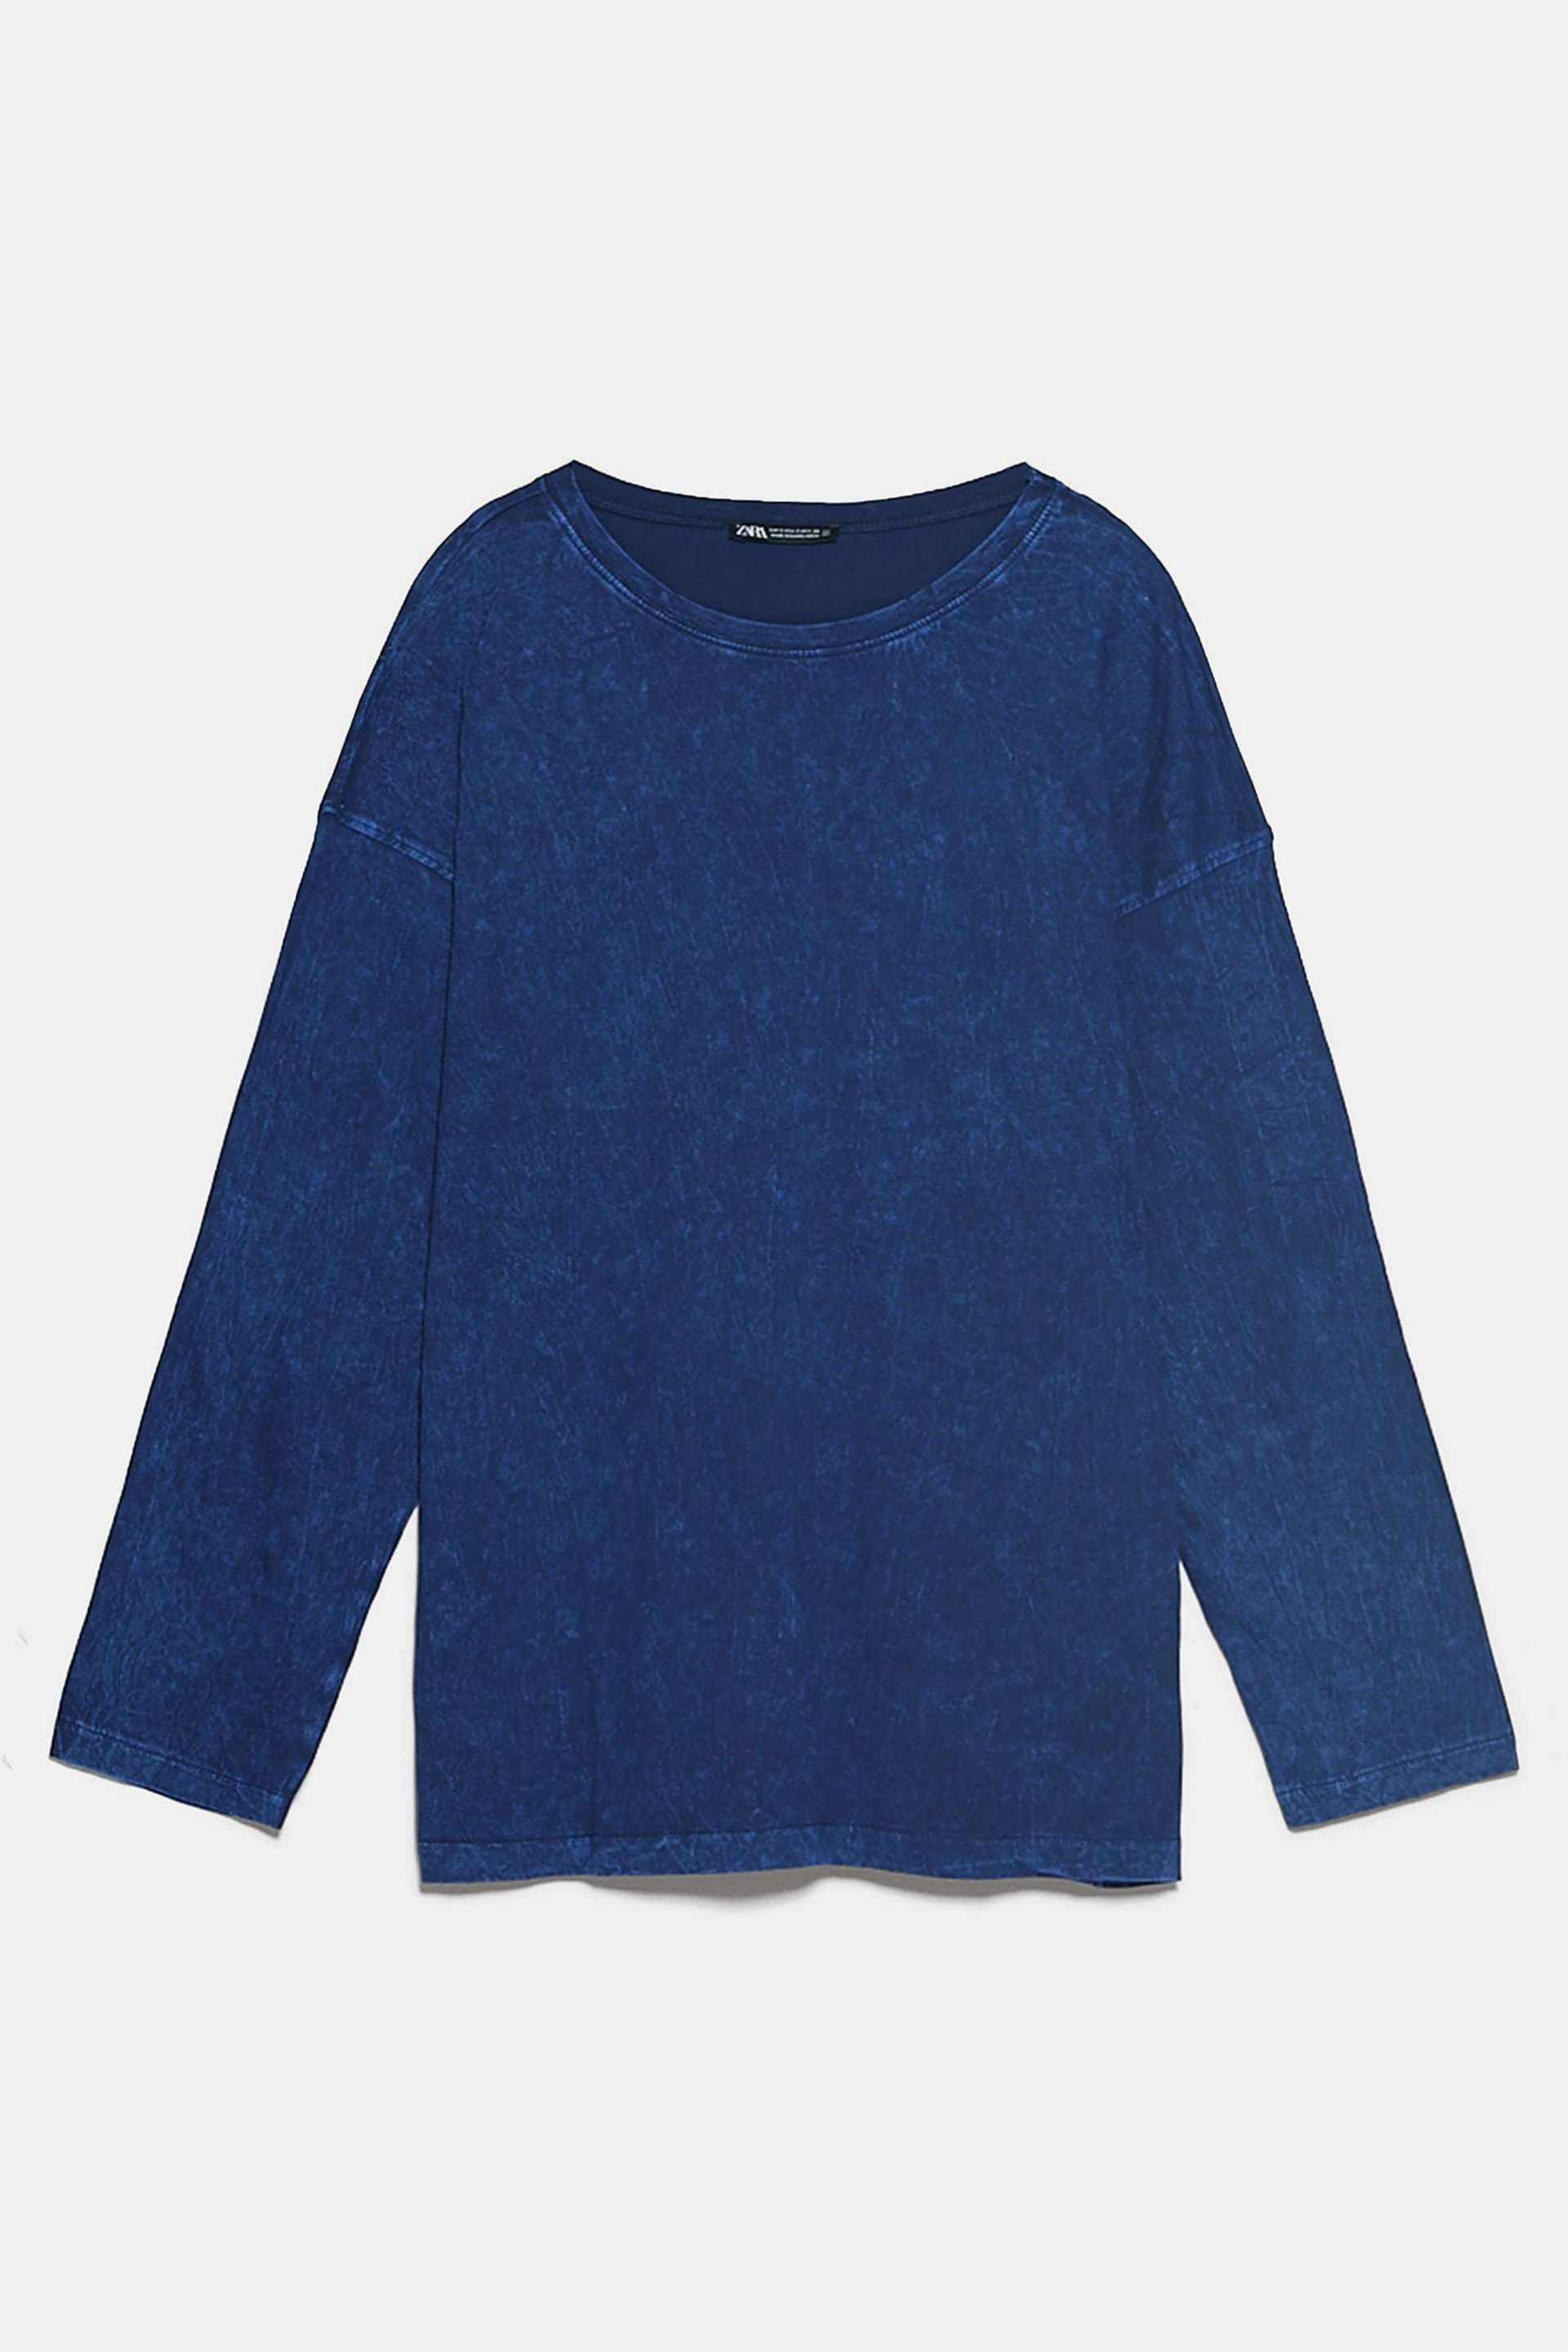 Camiseta efecto lavado en azul ndigo de Zara (12,95)